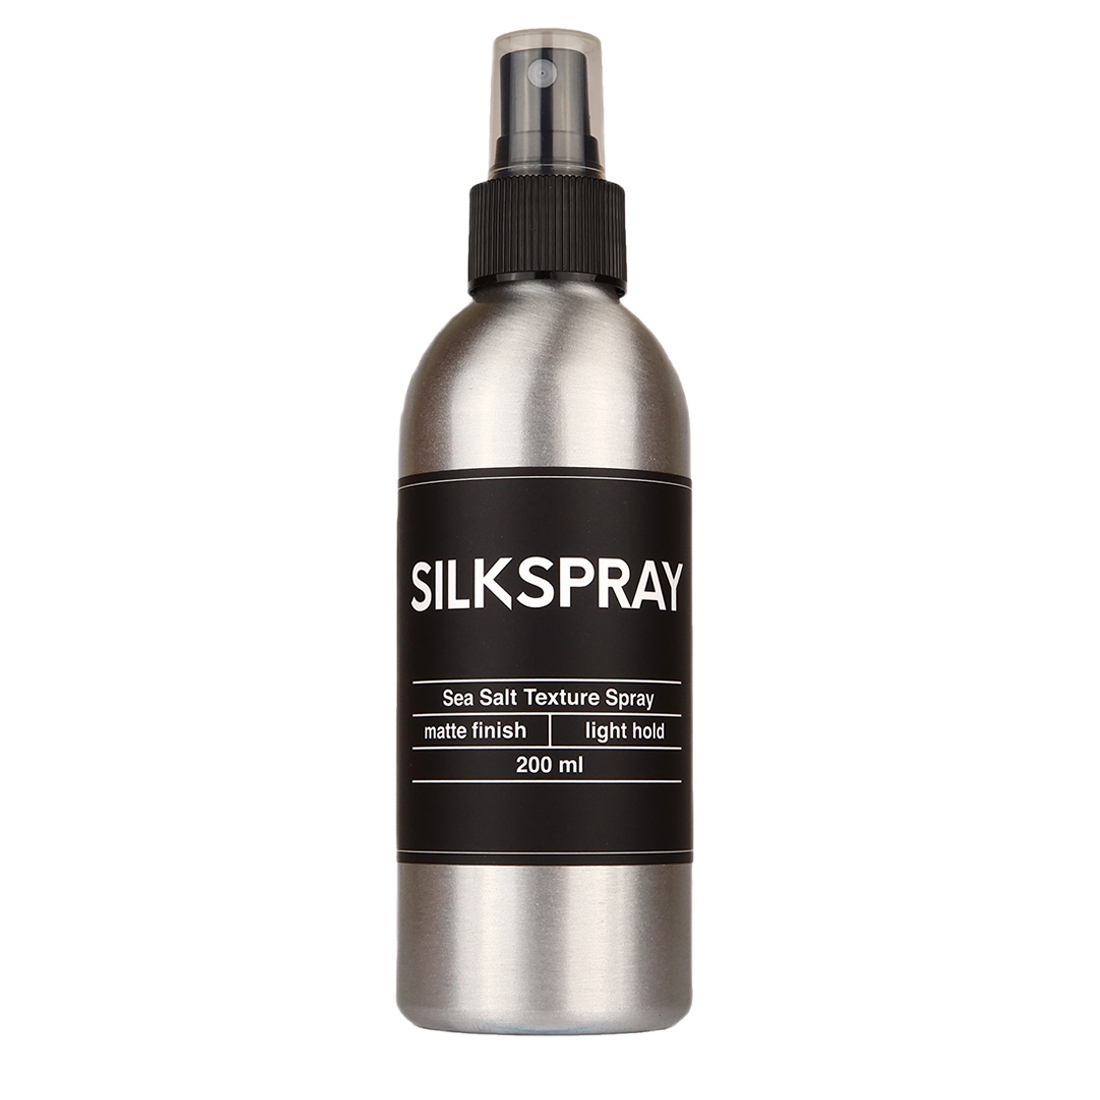 Лак для волос с морской солью Silkclay Silkspray, 200 мл kensuko спрей для укладки волос kensuko текстурирующий с морской солью 50 мл